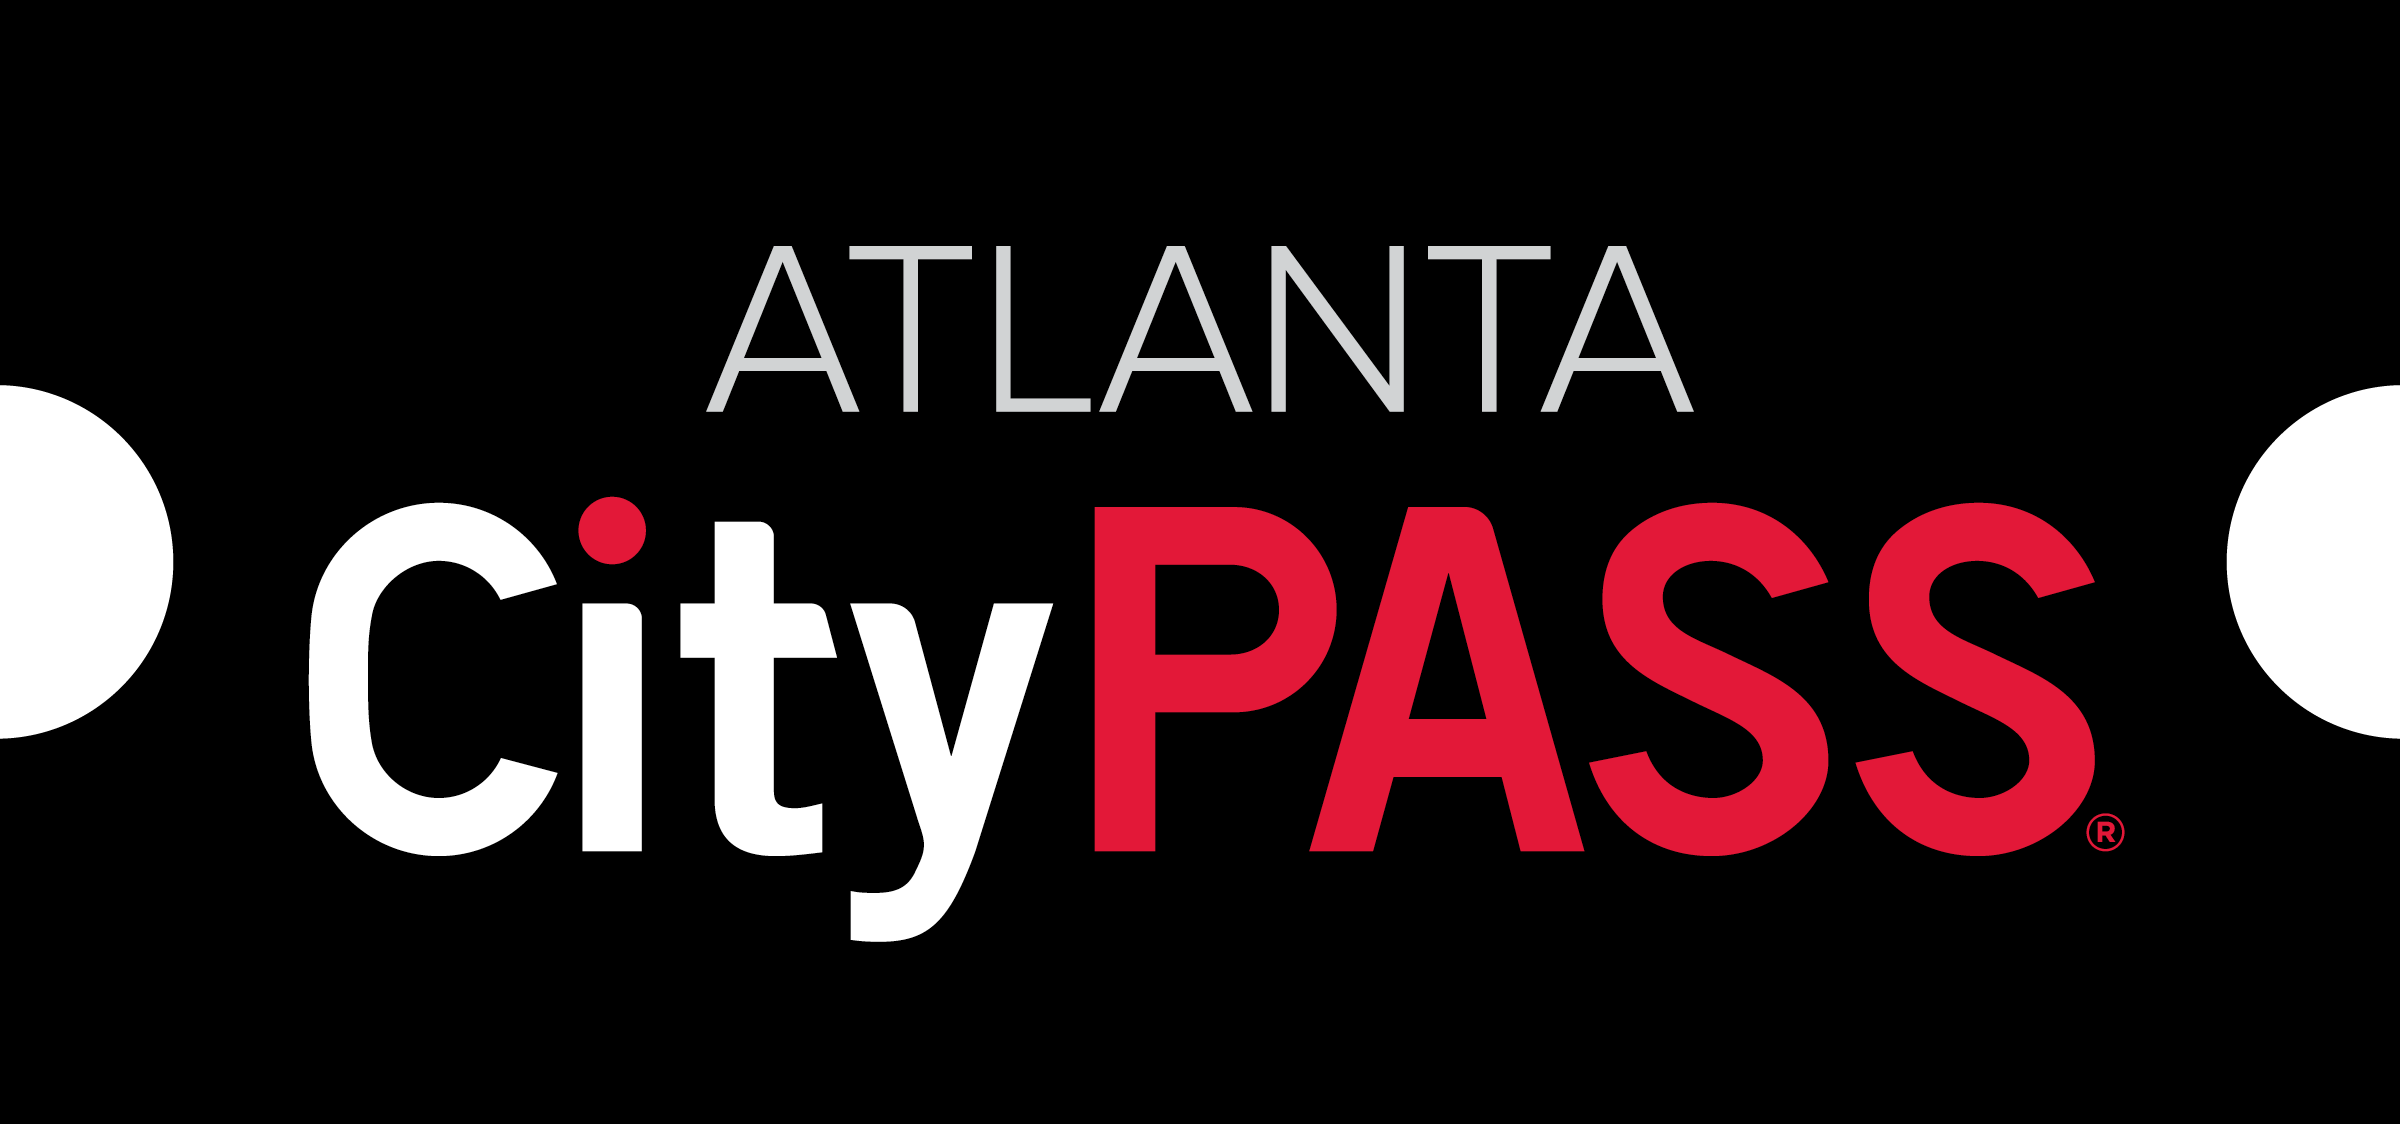 Atl Inc Logo - Asset Library Logos - Atlanta CityPASS | CityPASS®